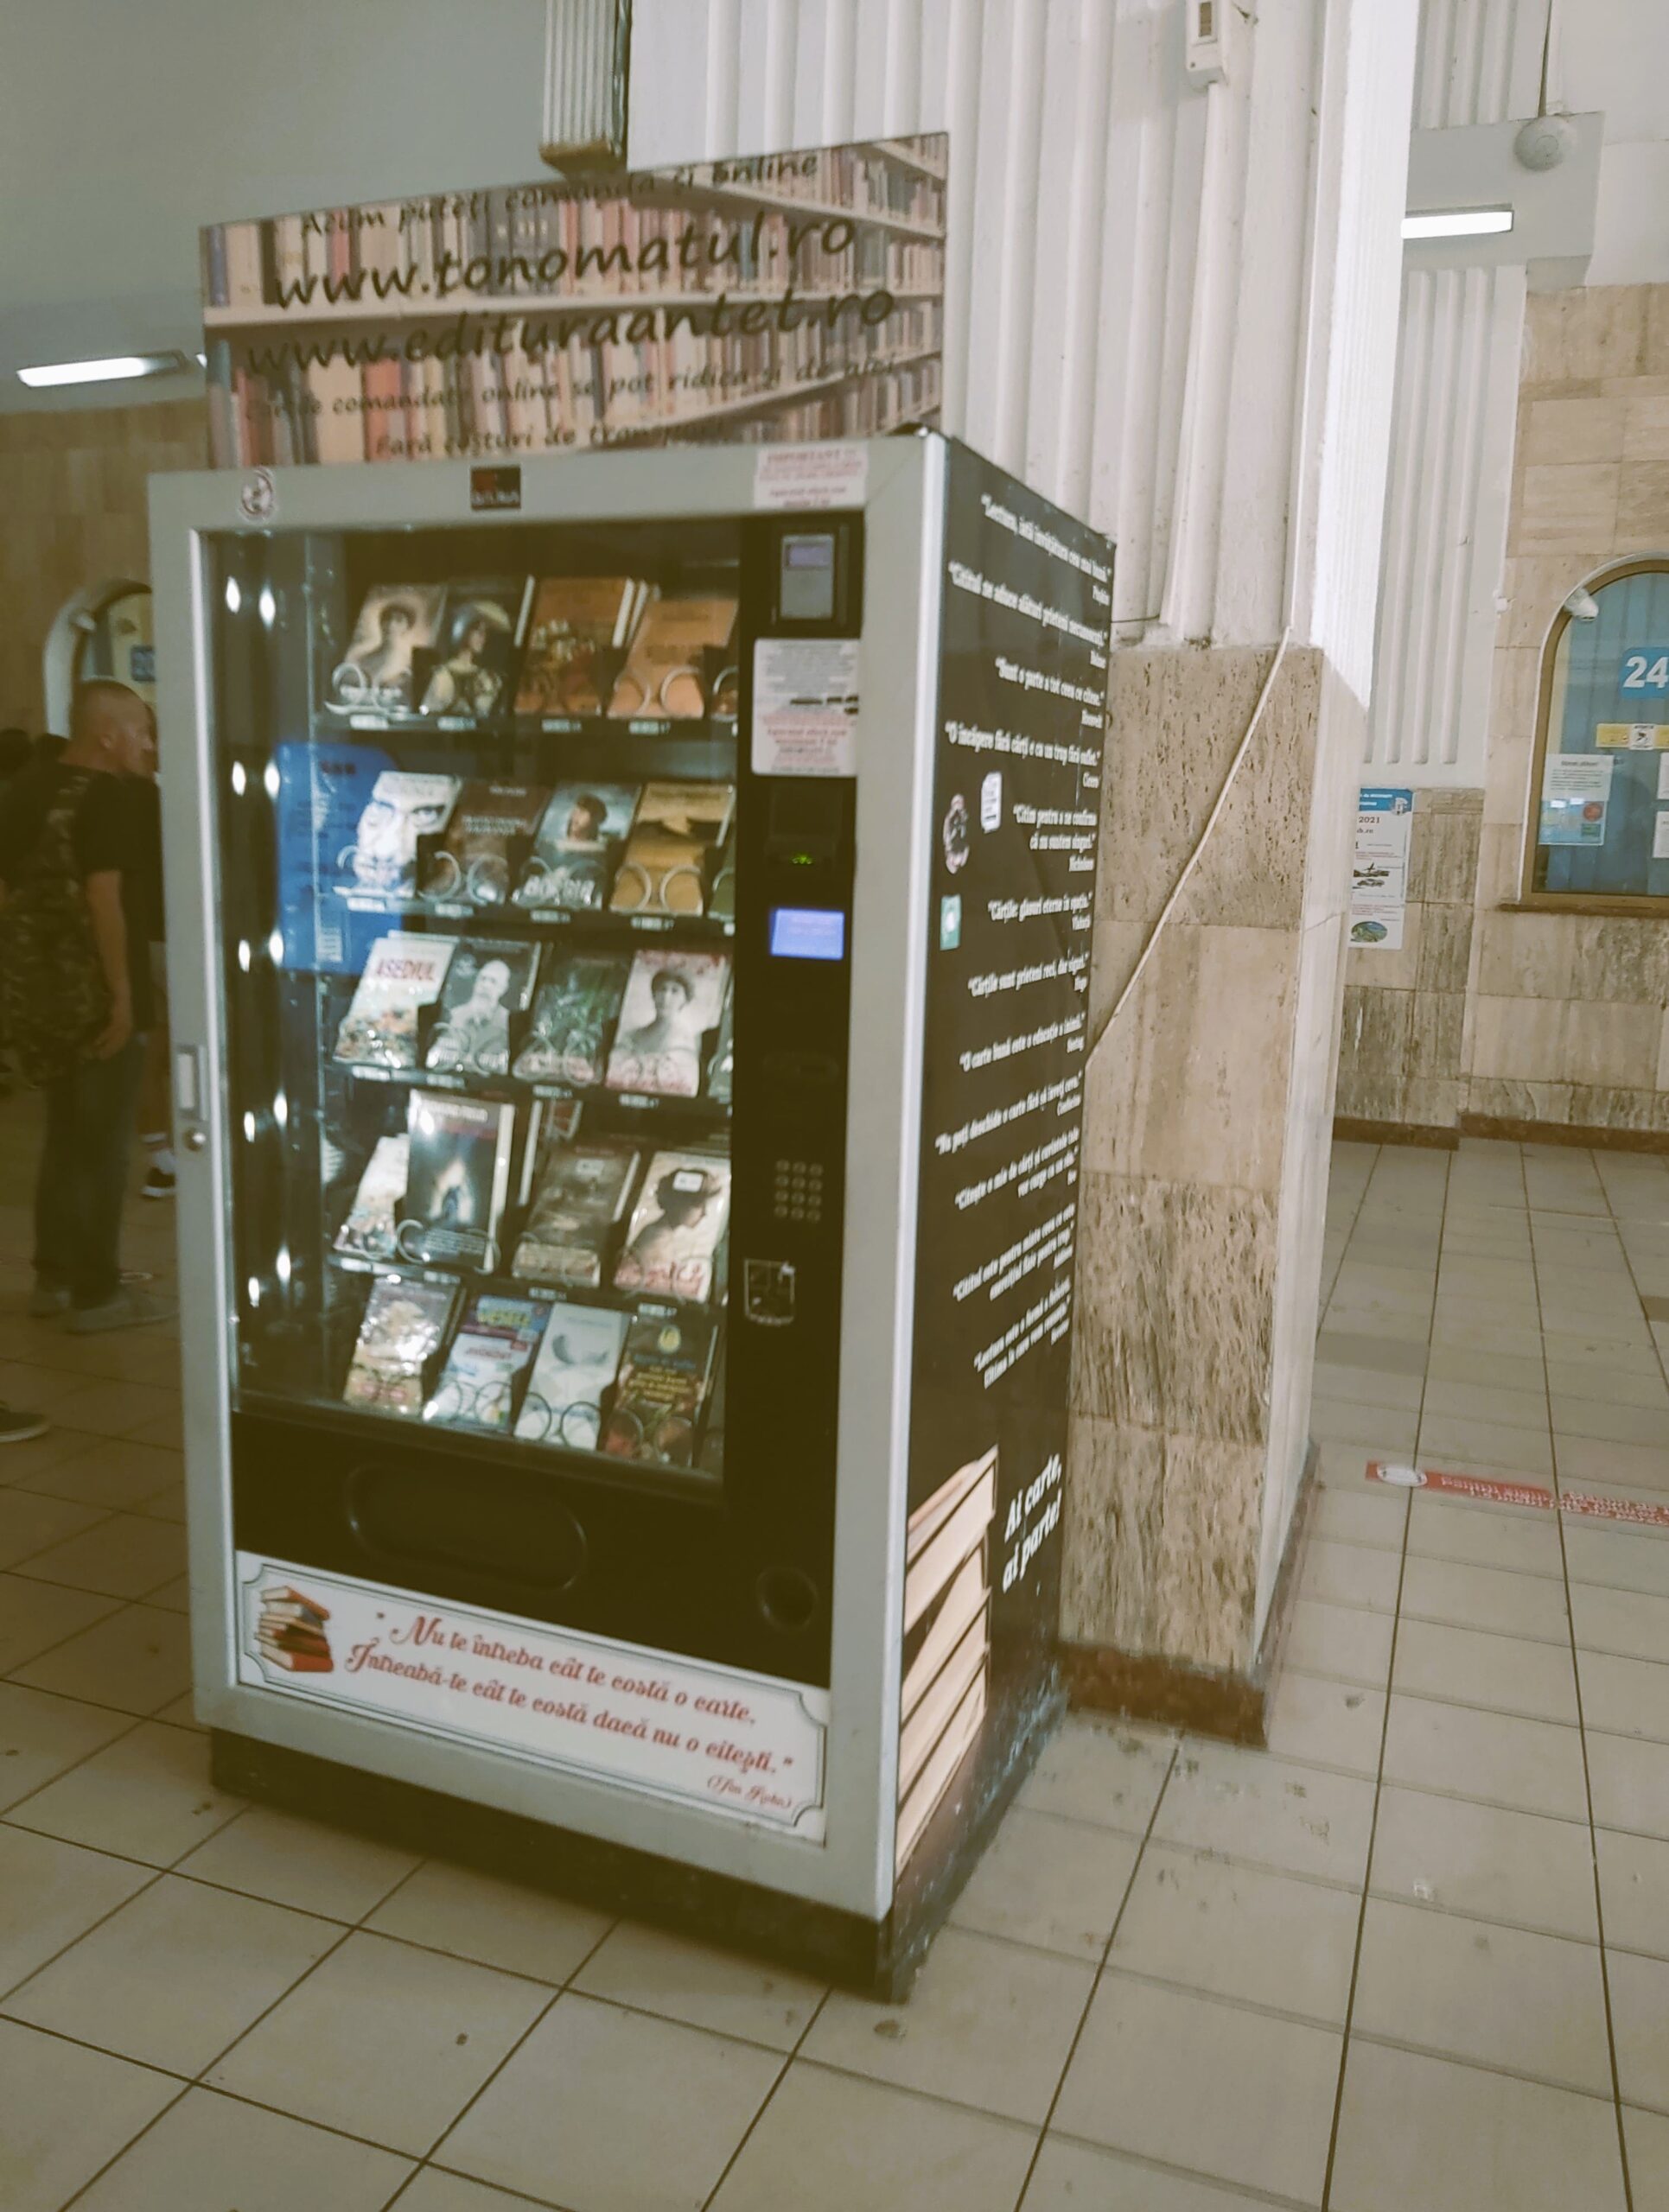 A book vending machine in București, Romania